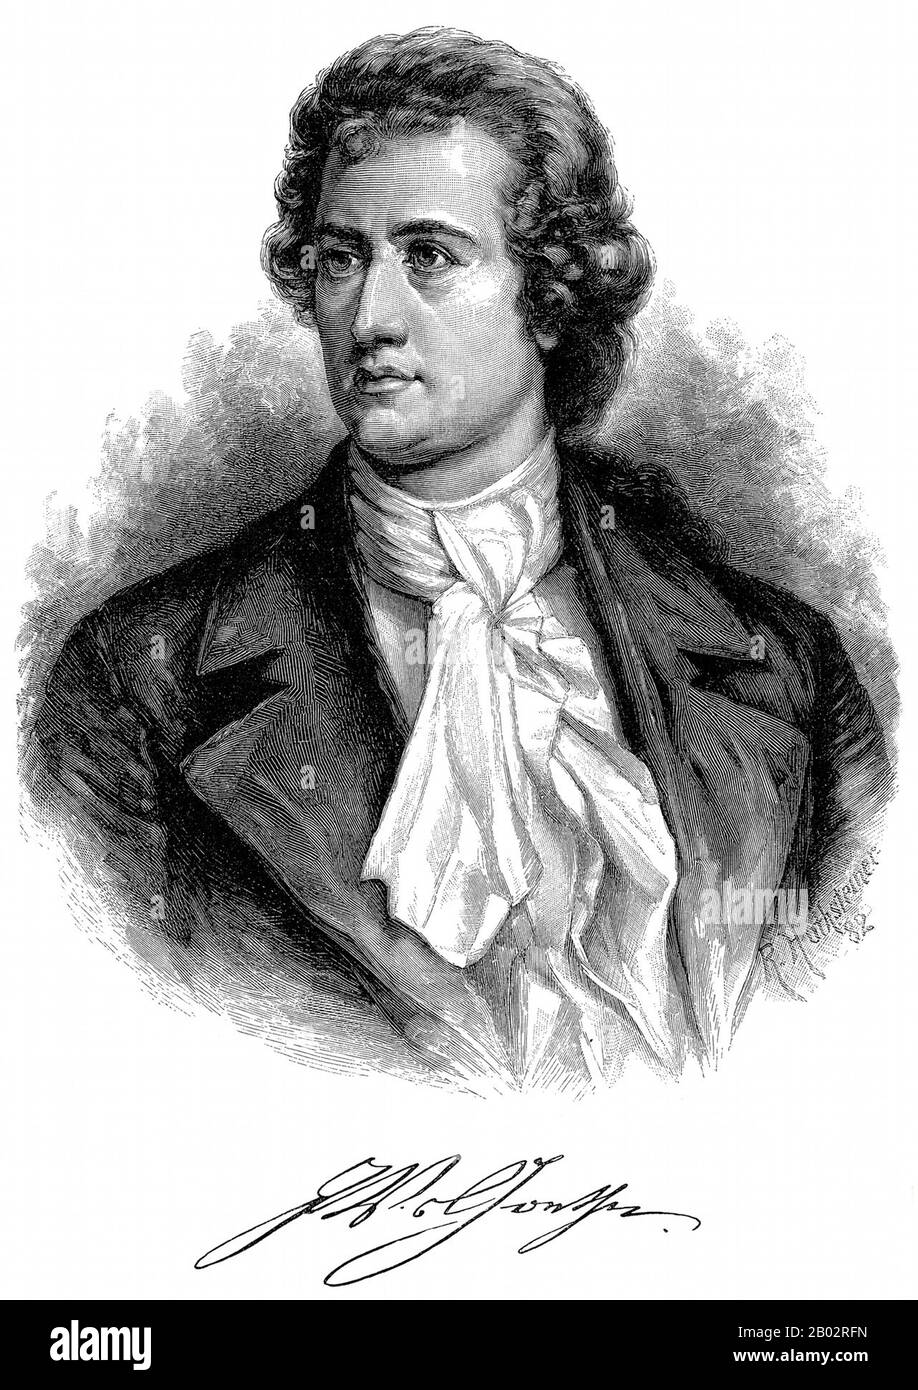 Johann Wolfgang von Goethe-Institut (28. August 1749 - 22. März 1832) war ein deutscher Schriftsteller und Staatsmann. Sein Werk umfasst epische und lyrische Lyrik, die in einer Vielzahl von Metern und Stilen geschrieben ist; Prosa- und Versdramen; Memoiren; eine Autobiografie; Literatur- und ästhetische Kritik; Abhandlungen über Botanik, Anatomie und Farbe; und vier Romane. Darüber hinaus sind zahlreiche literarische und wissenschaftliche Fragmente, mehr als 10.000 Briefe und fast 3.000 Zeichnungen von ihm erhalten. Als literarische Berühmtheit mit 25 Jahren wurde von dem Herzog von Sachsen-Weimar, Karl August, im Jahre 17855 nach der ersten Aufnahme der Residenz TH verärscht Stockfoto